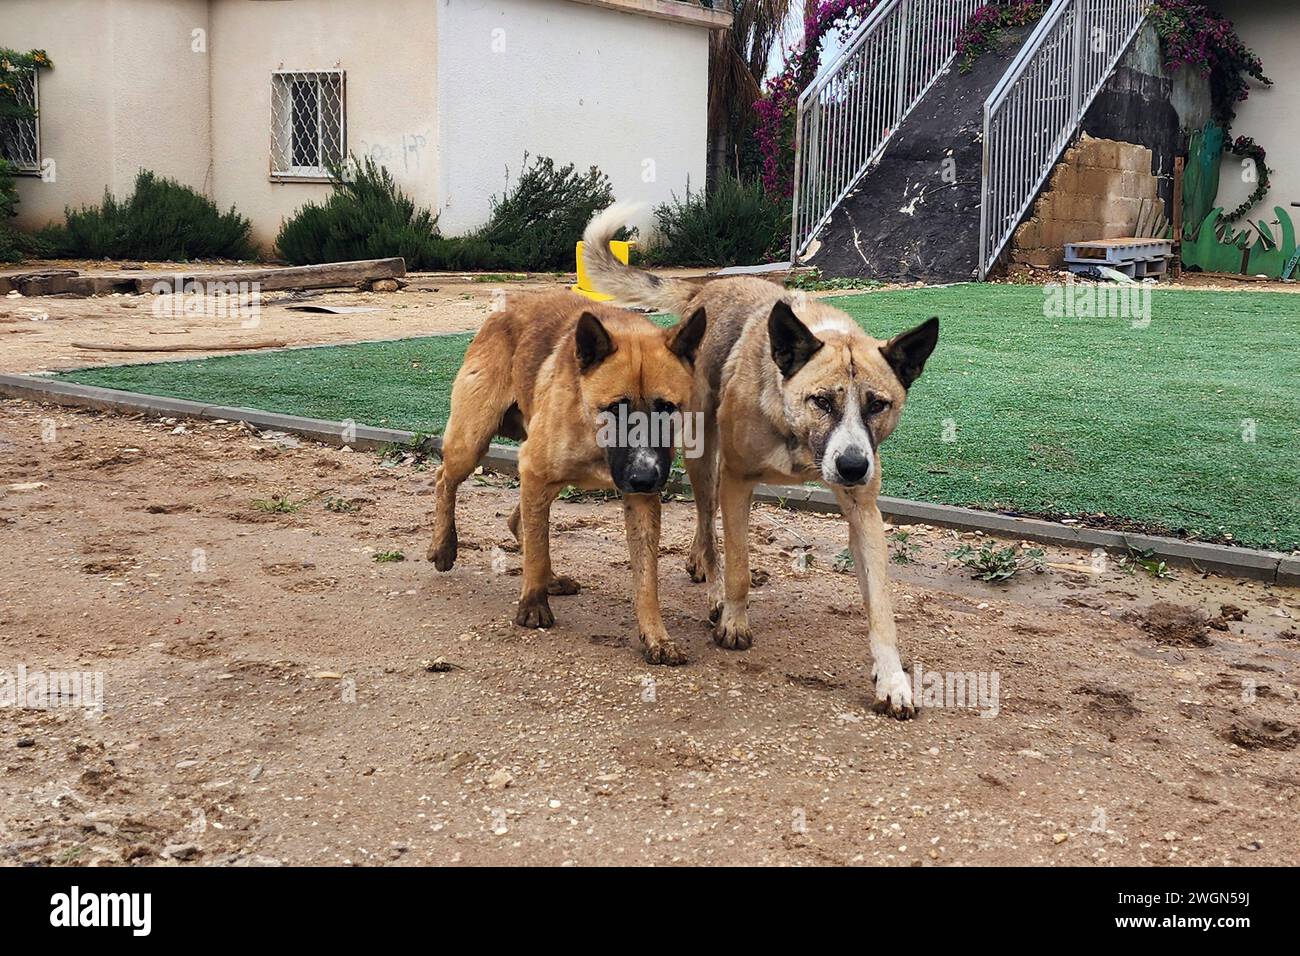 Des groupes de chiens errants de la bande de Gaza errant autour des communautés frontalières israéliennes des centaines de chiens de Gaza errent librement près des villes israéliennes ; un scientifique avertit qu'ils menacent la nature en s'attaquant à la faune et pourraient propager des maladies, mettant en danger la vie humaine Banque D'Images